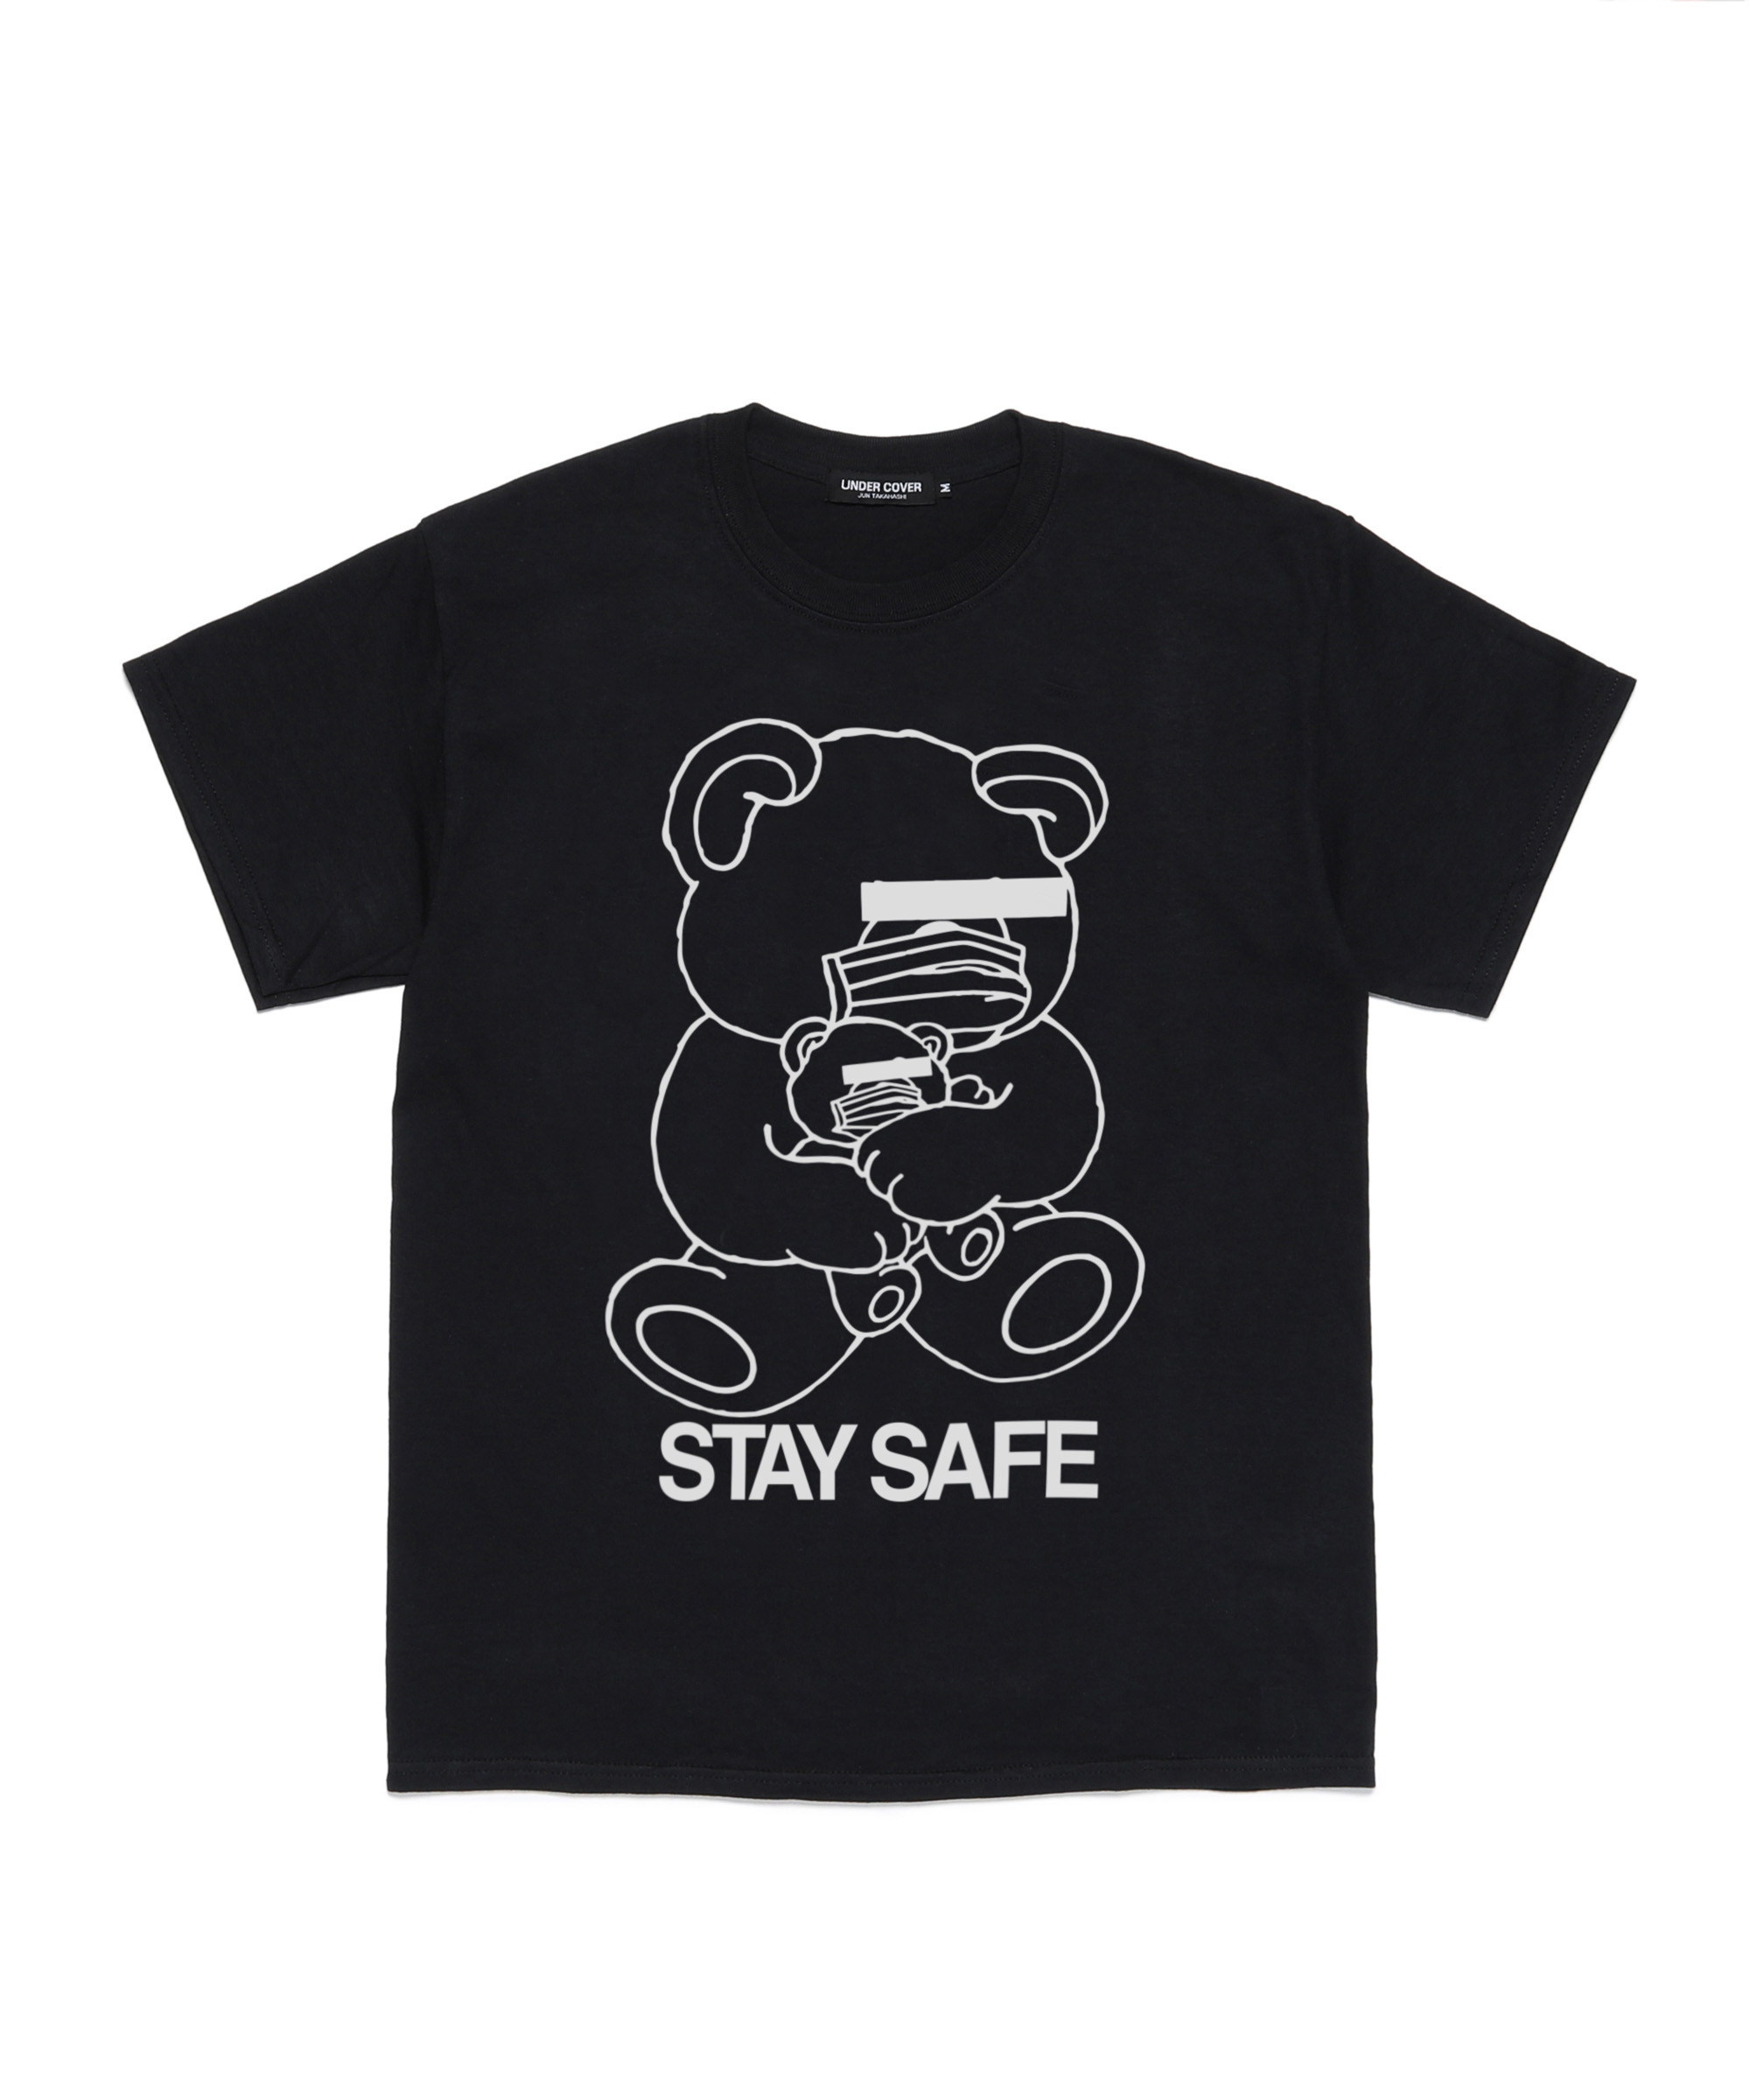 アンダーカバー Stay Home Tシャツを3日間限定で受注販売